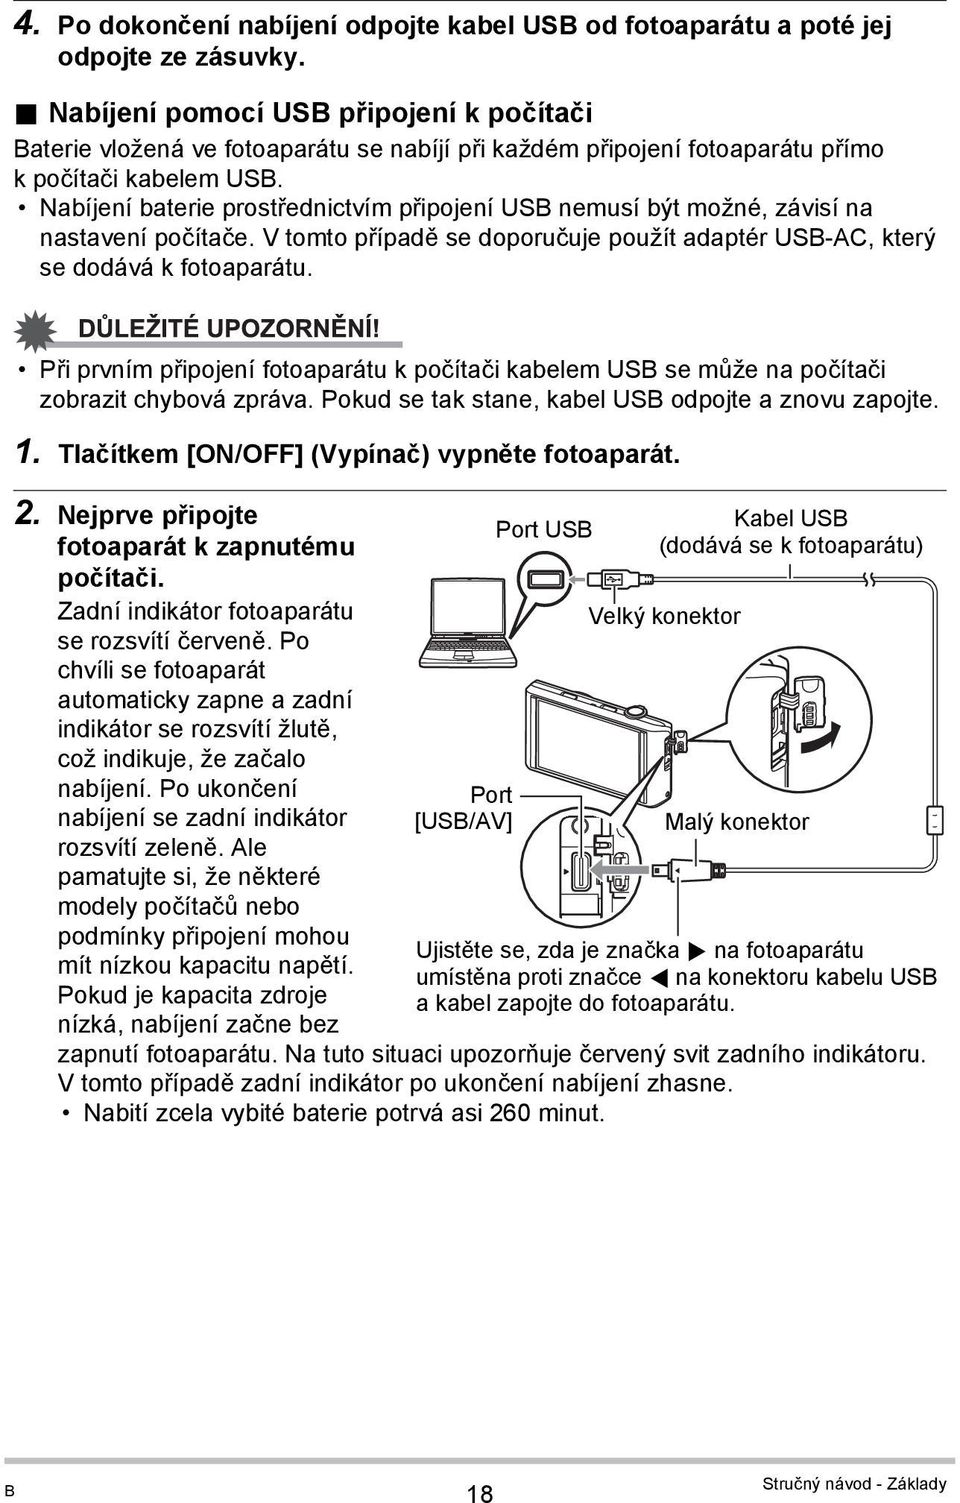 Nabíjení baterie prostřednictvím připojení USB nemusí být možné, závisí na nastavení počítače. V tomto případě se doporučuje použít adaptér USB-AC, který se dodává k fotoaparátu.